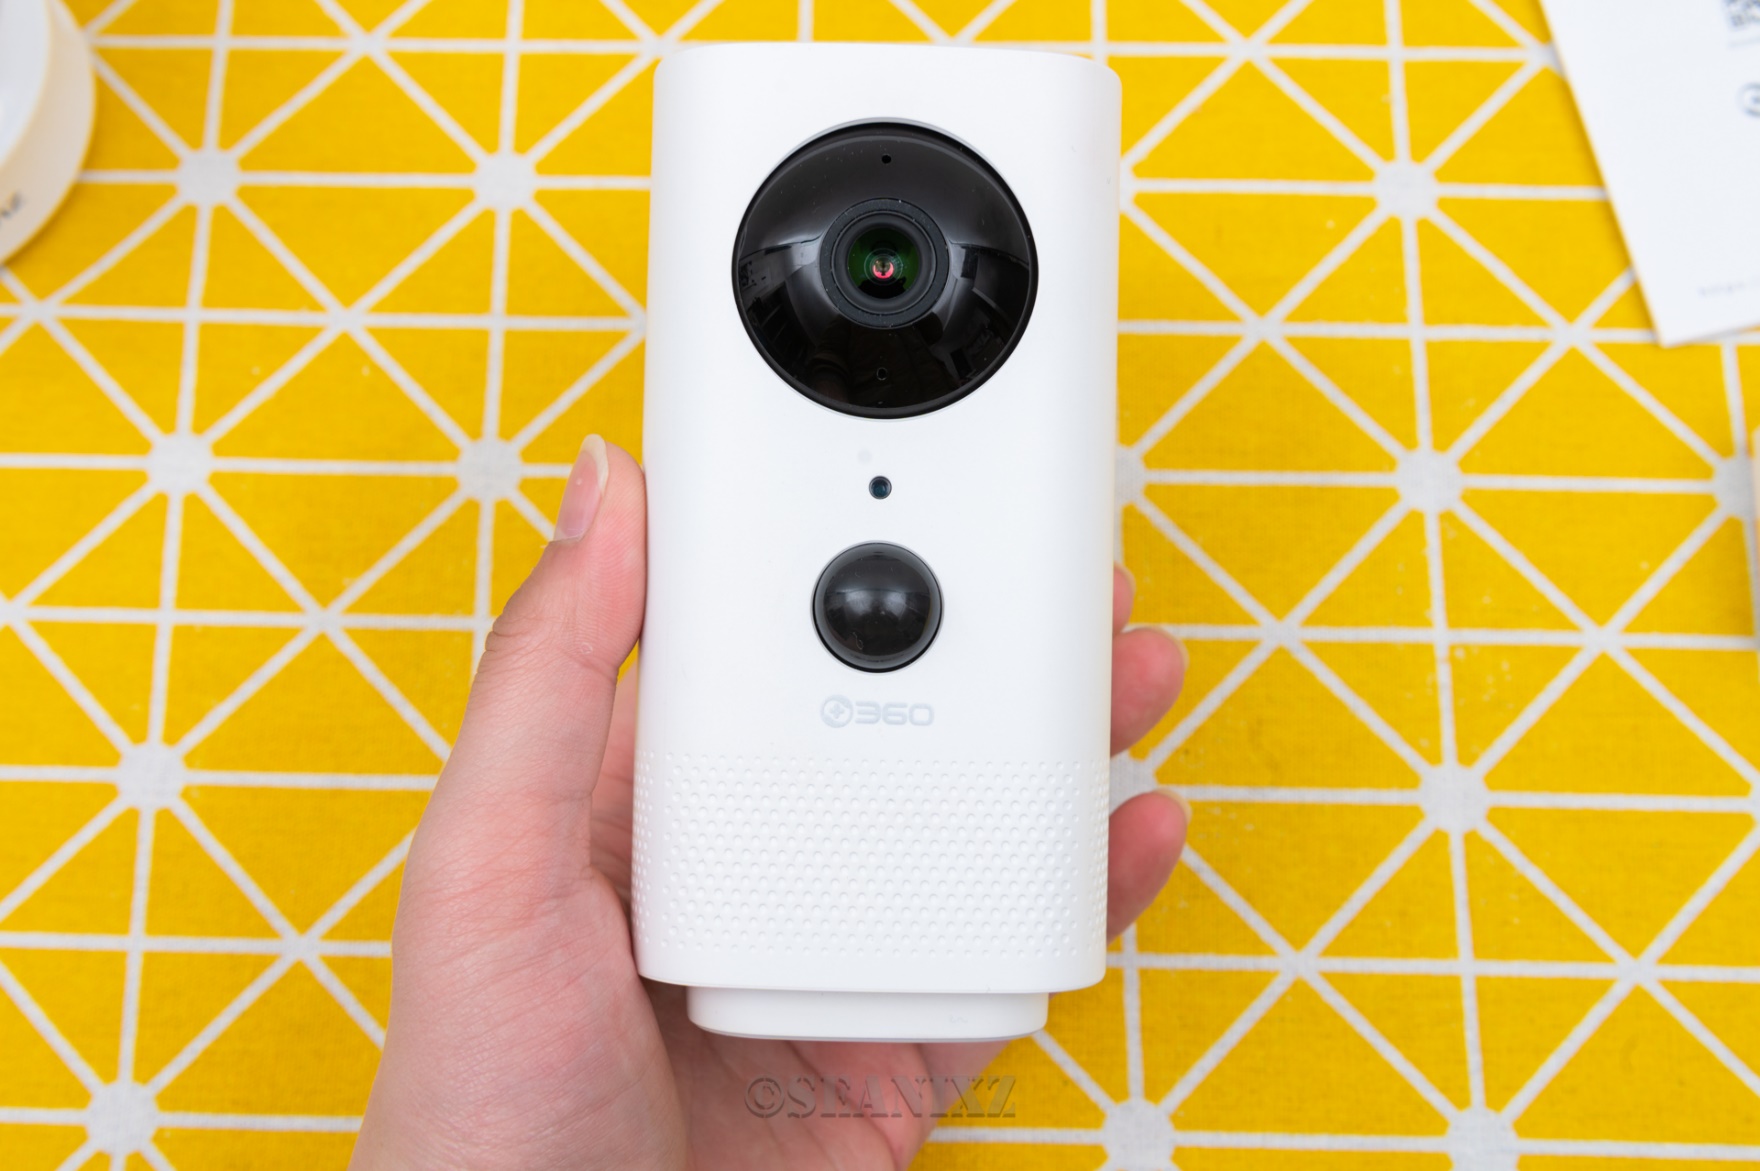 360智能摄像机3C电池版& 萤石C6CN云台摄像机对比评测